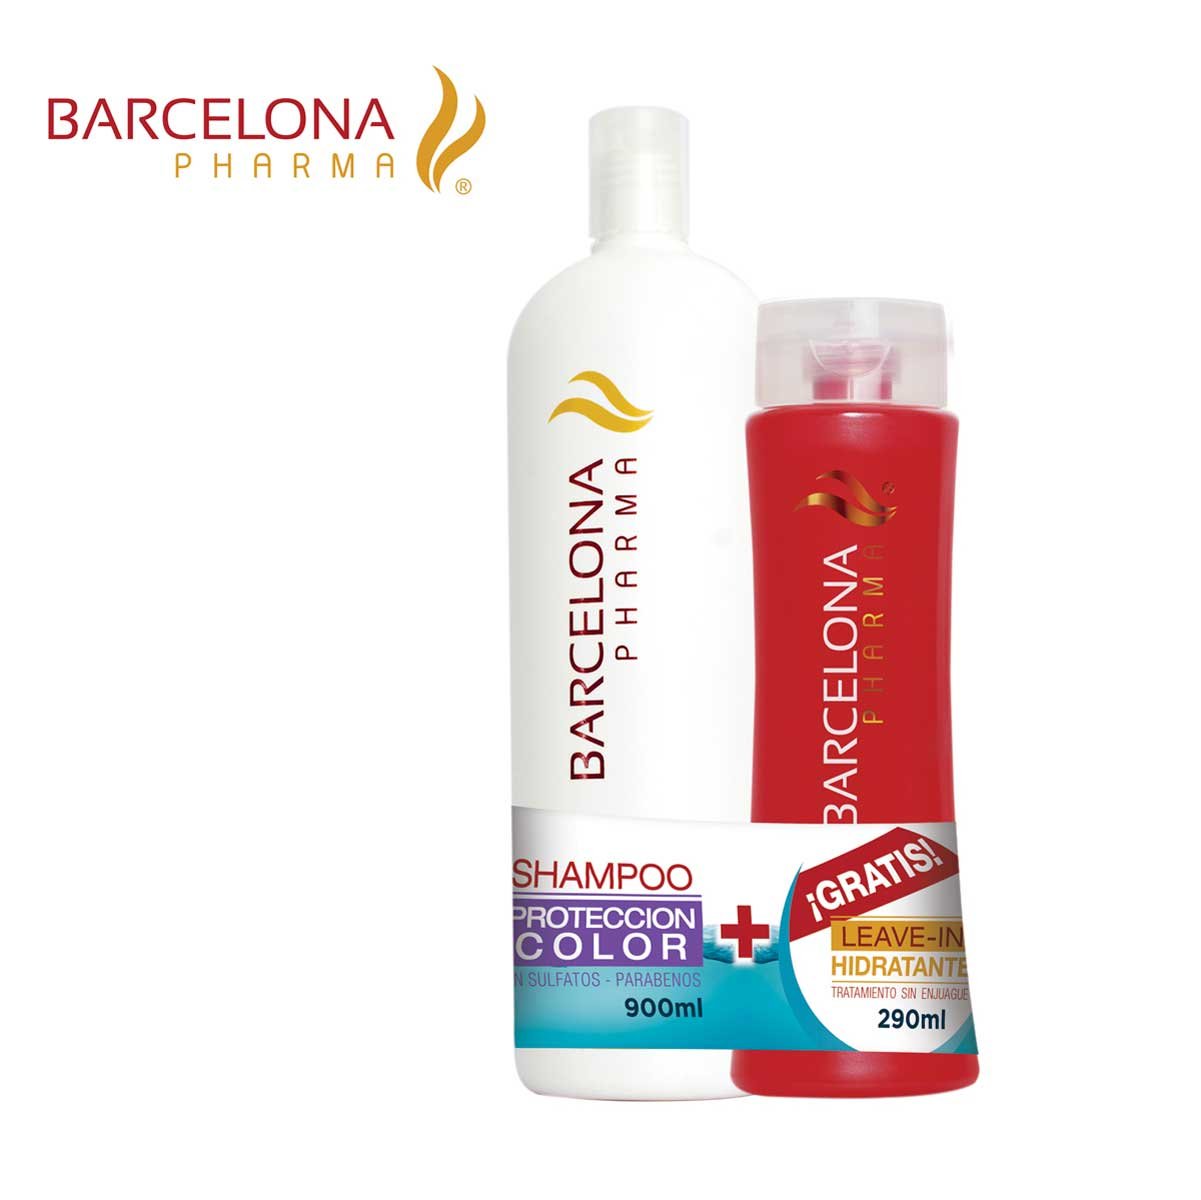 Shampoo 900 Ml. + Leave In Hidratante 290 Ml Barcelona Pharma